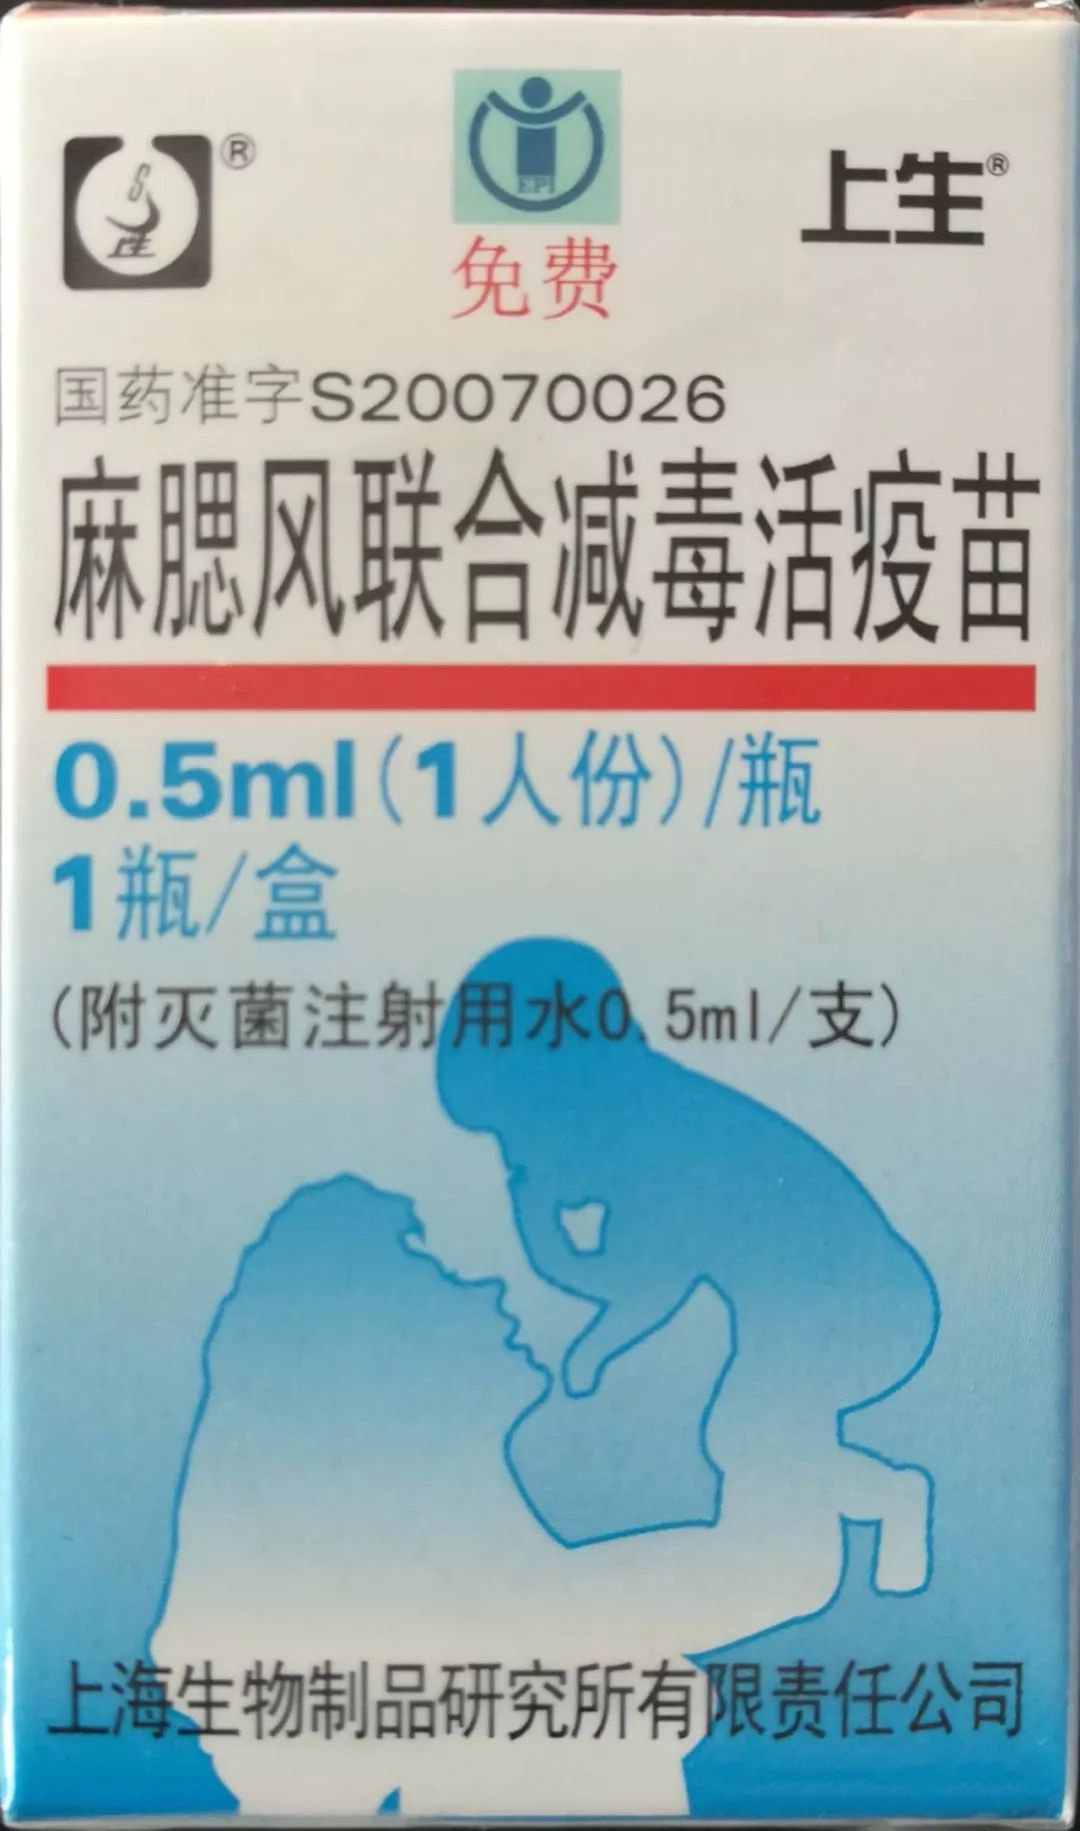 疫苗厂家是上海生物,那么就应该下图这种麻腮风疫苗了